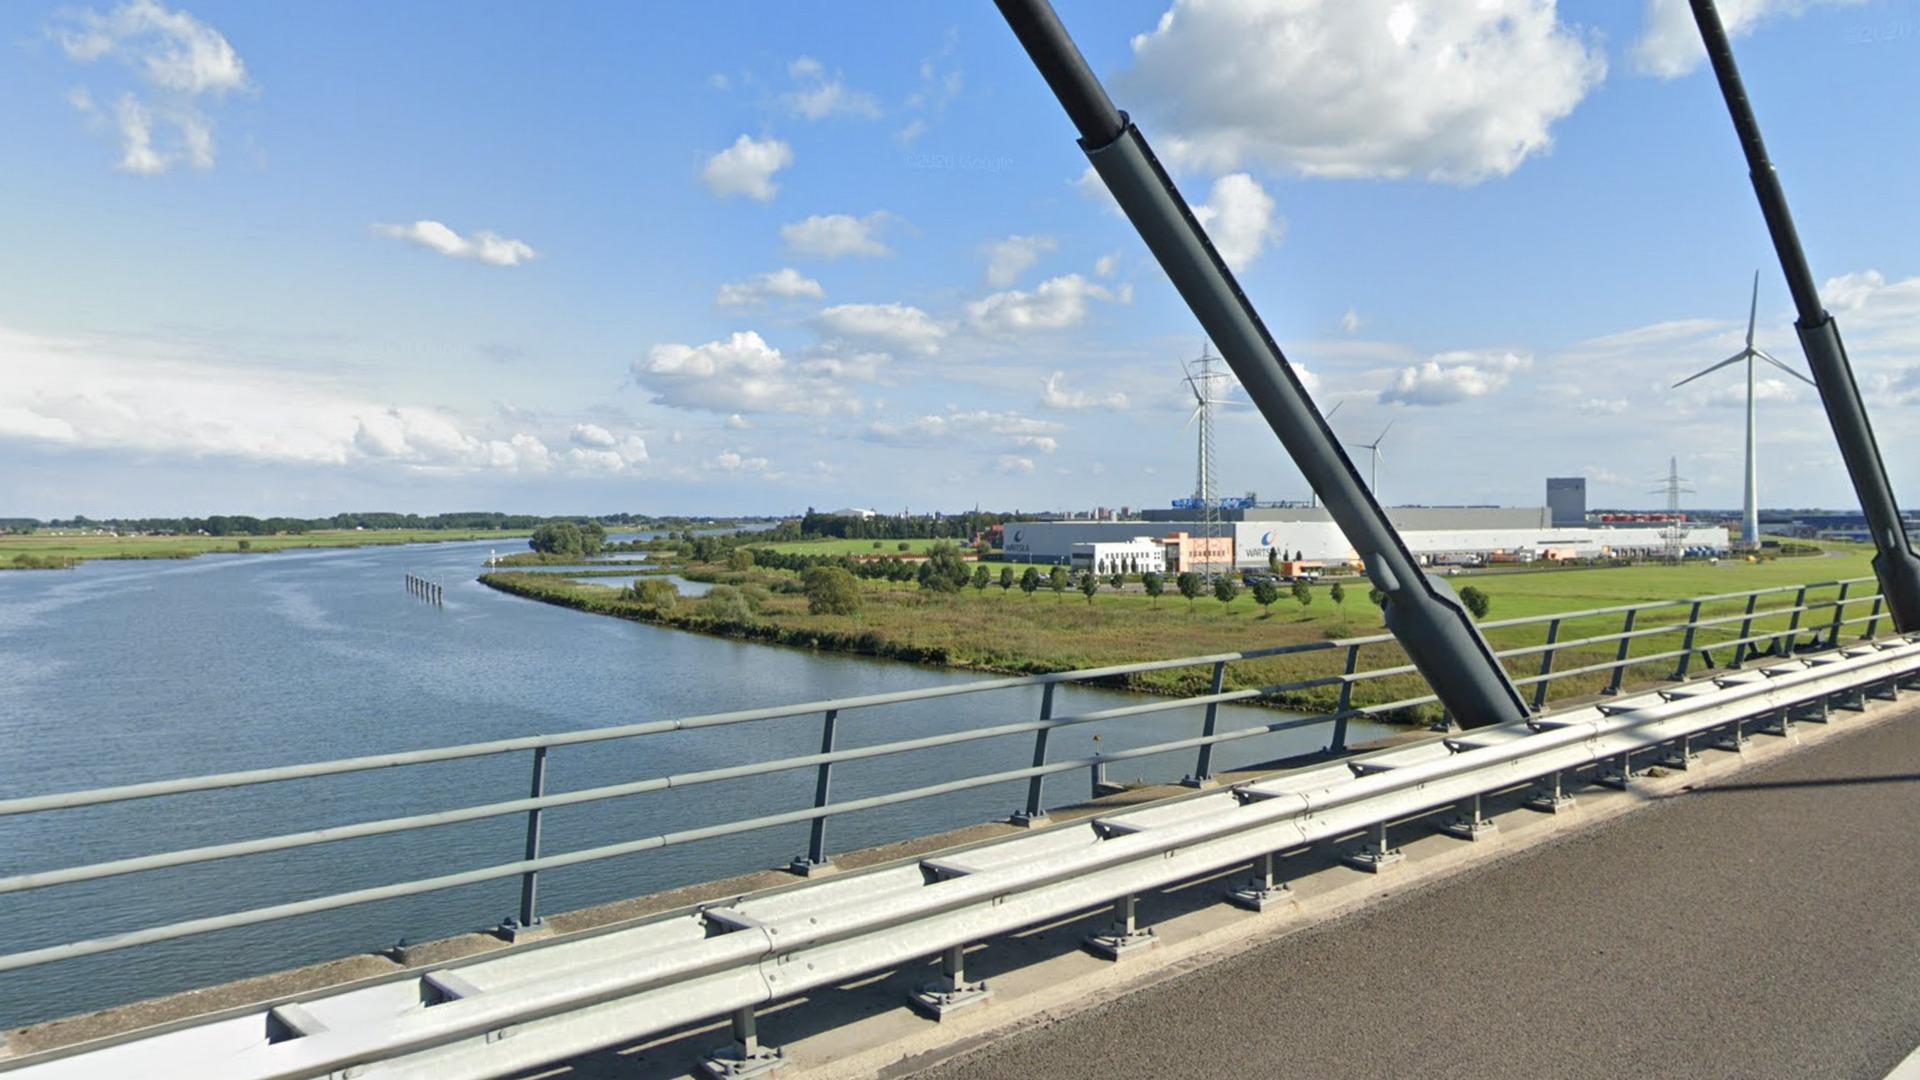 Kampen stemt in met twee extra windturbines op Zuiderzeehaven Kampen